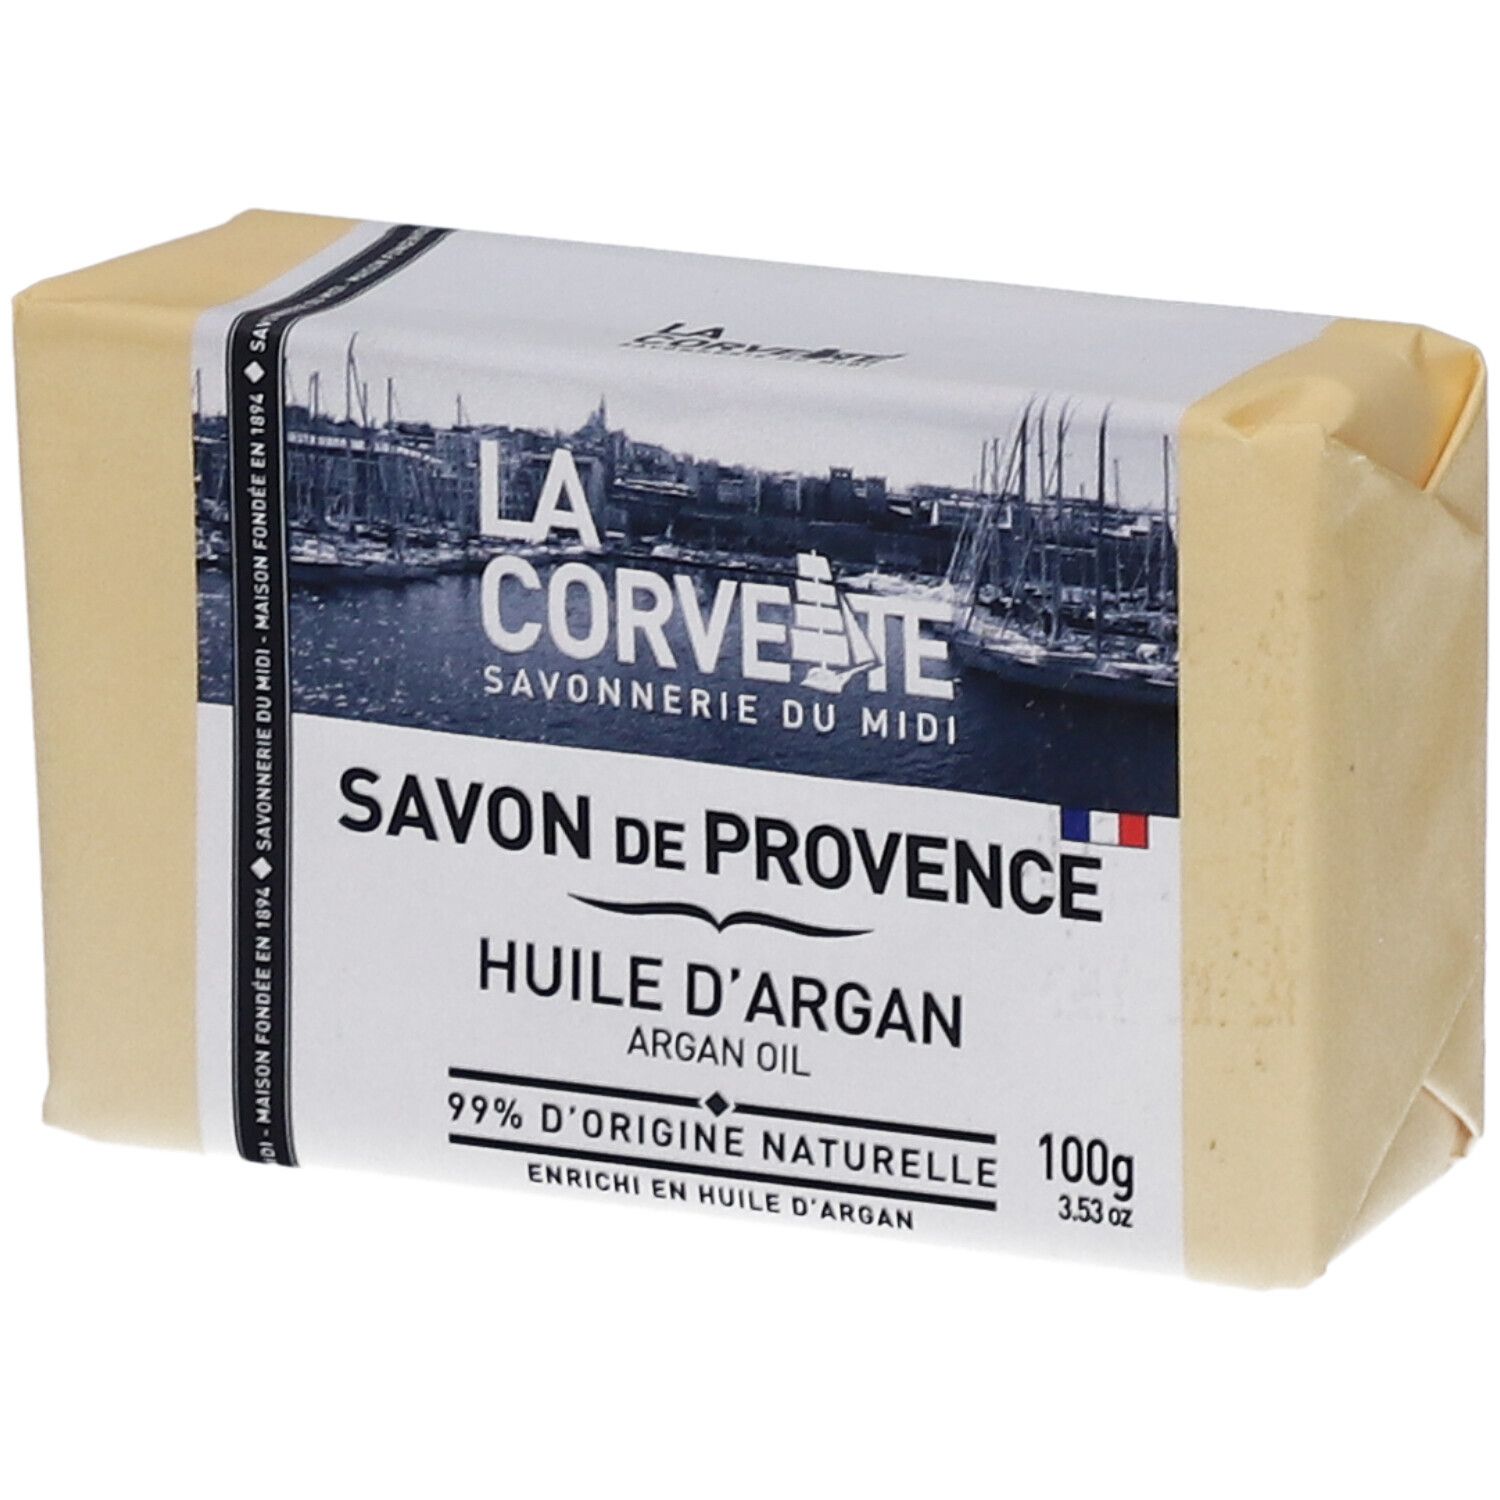 LA Corvette Savon de Provence Huile d'Argan